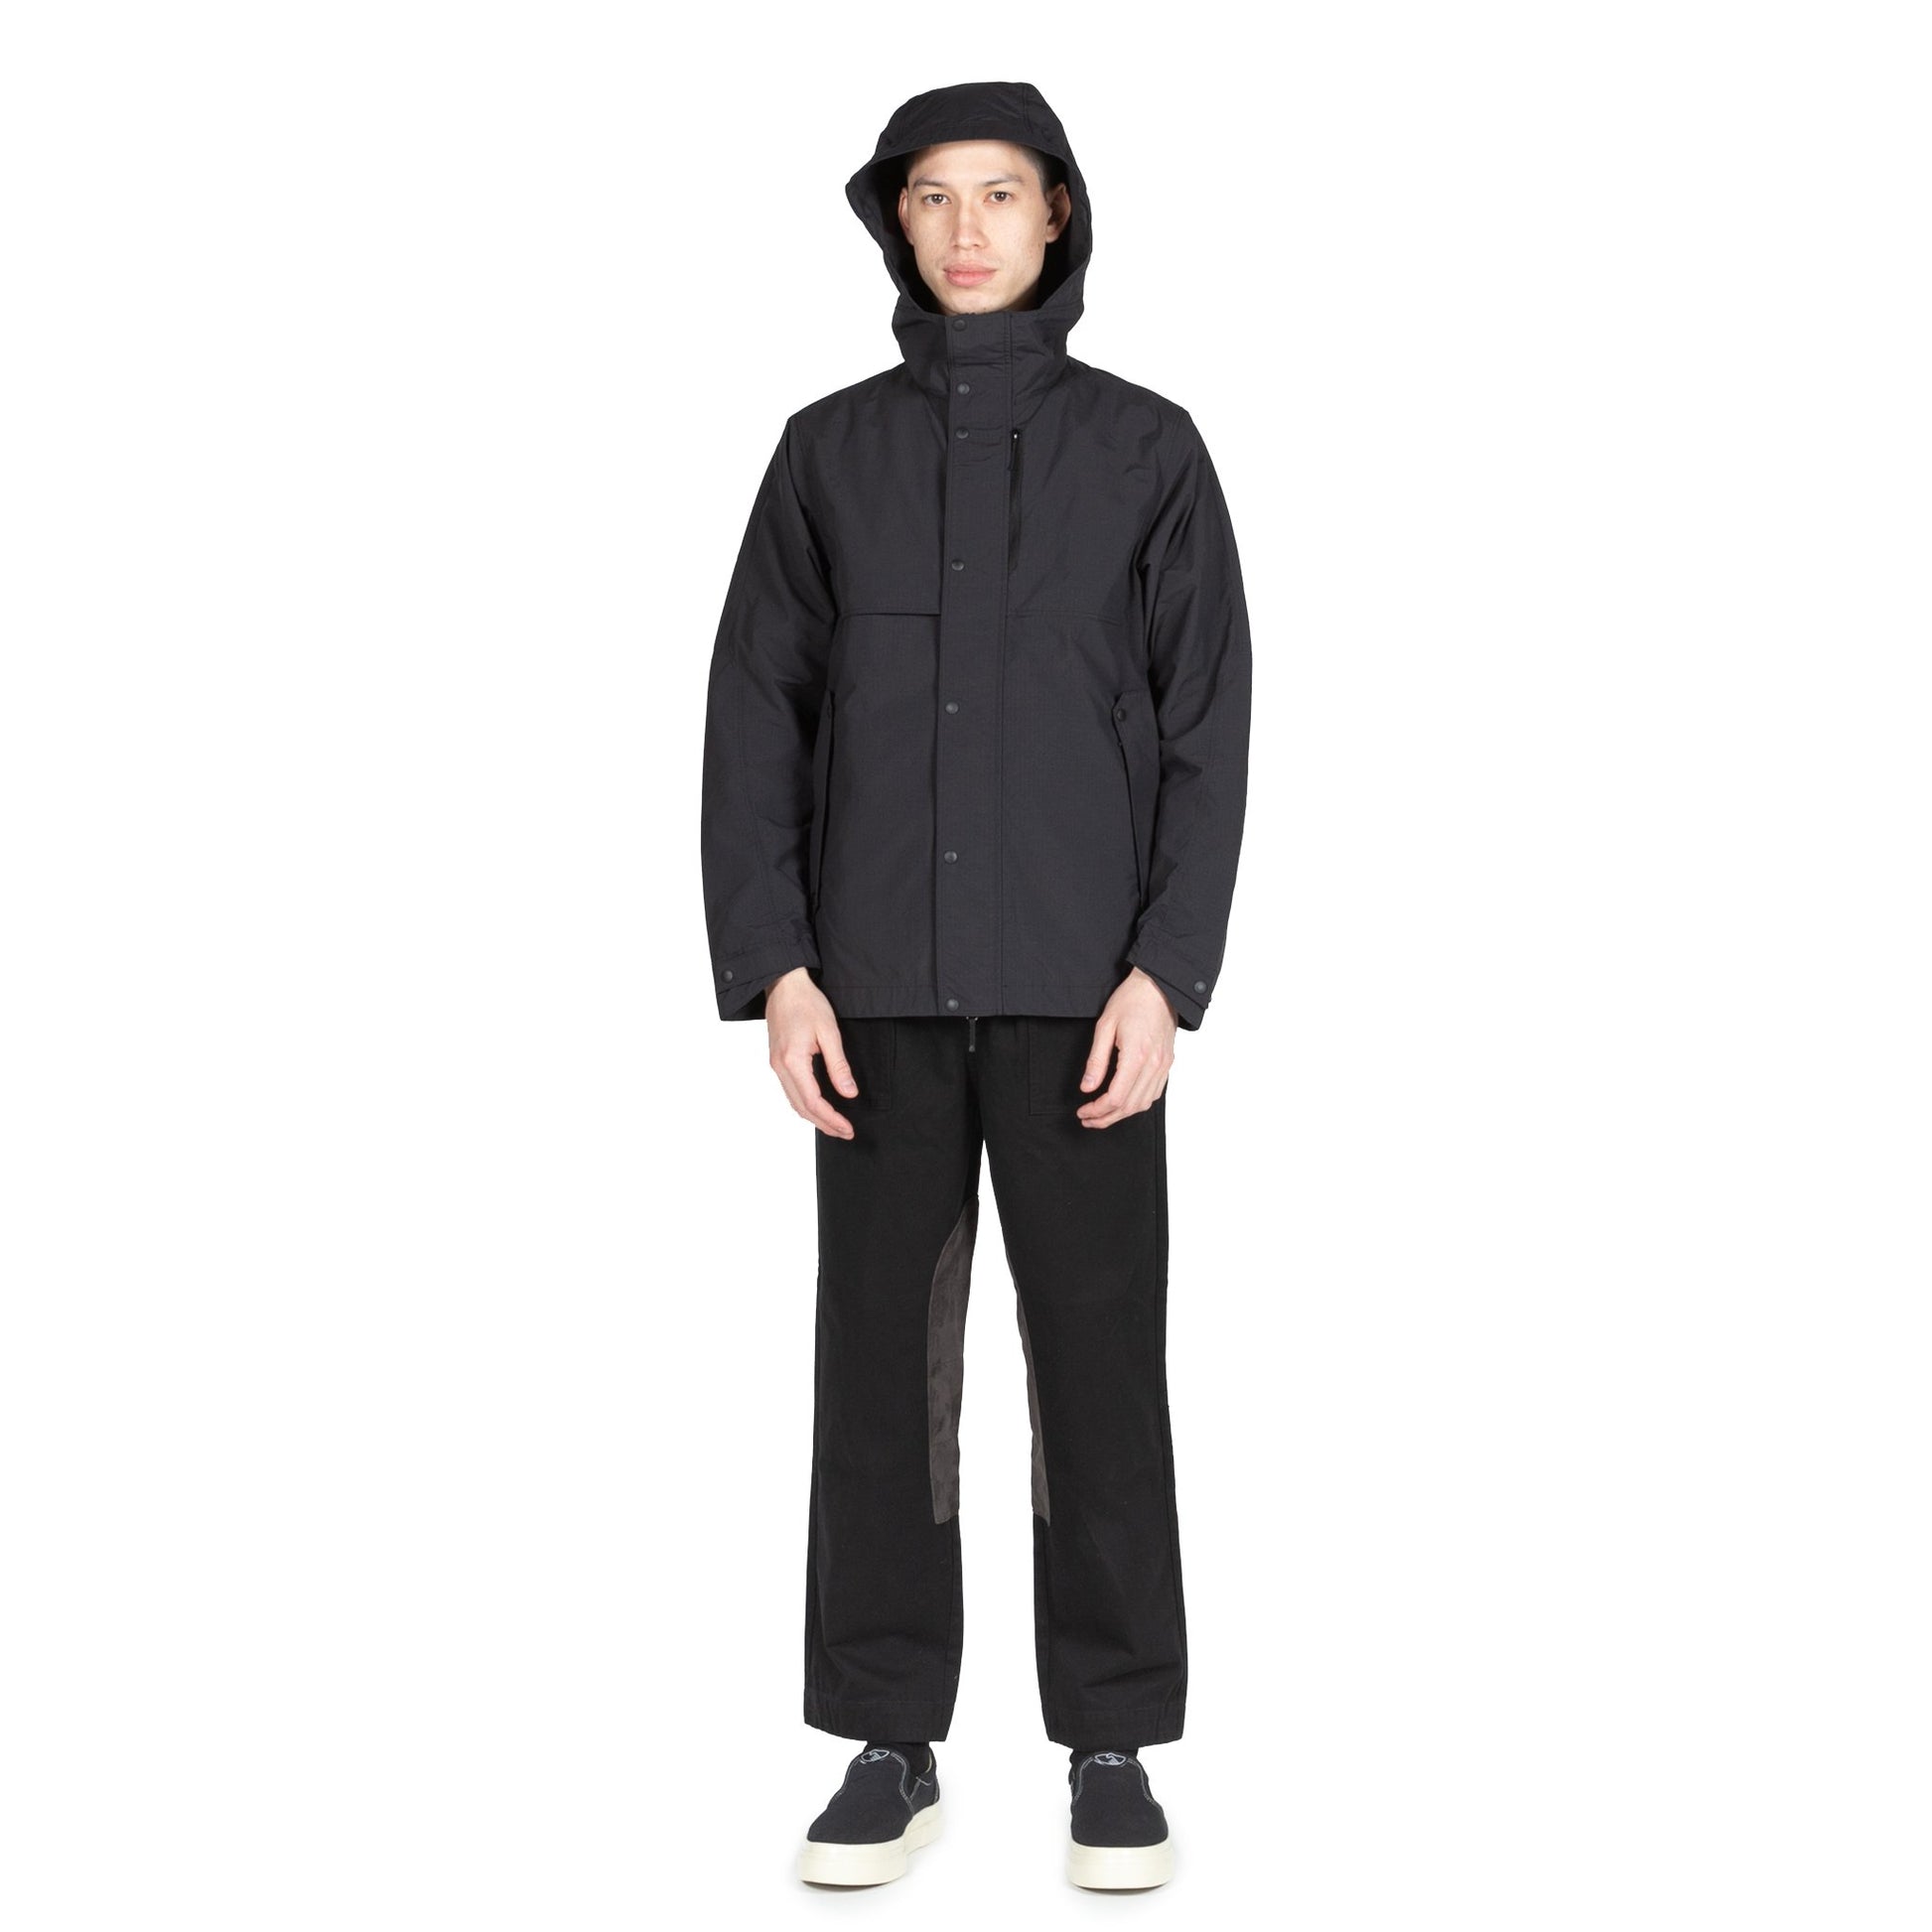 Goldwin Hooded Blouson Black rain gear all weather sportswear outerwear hooded